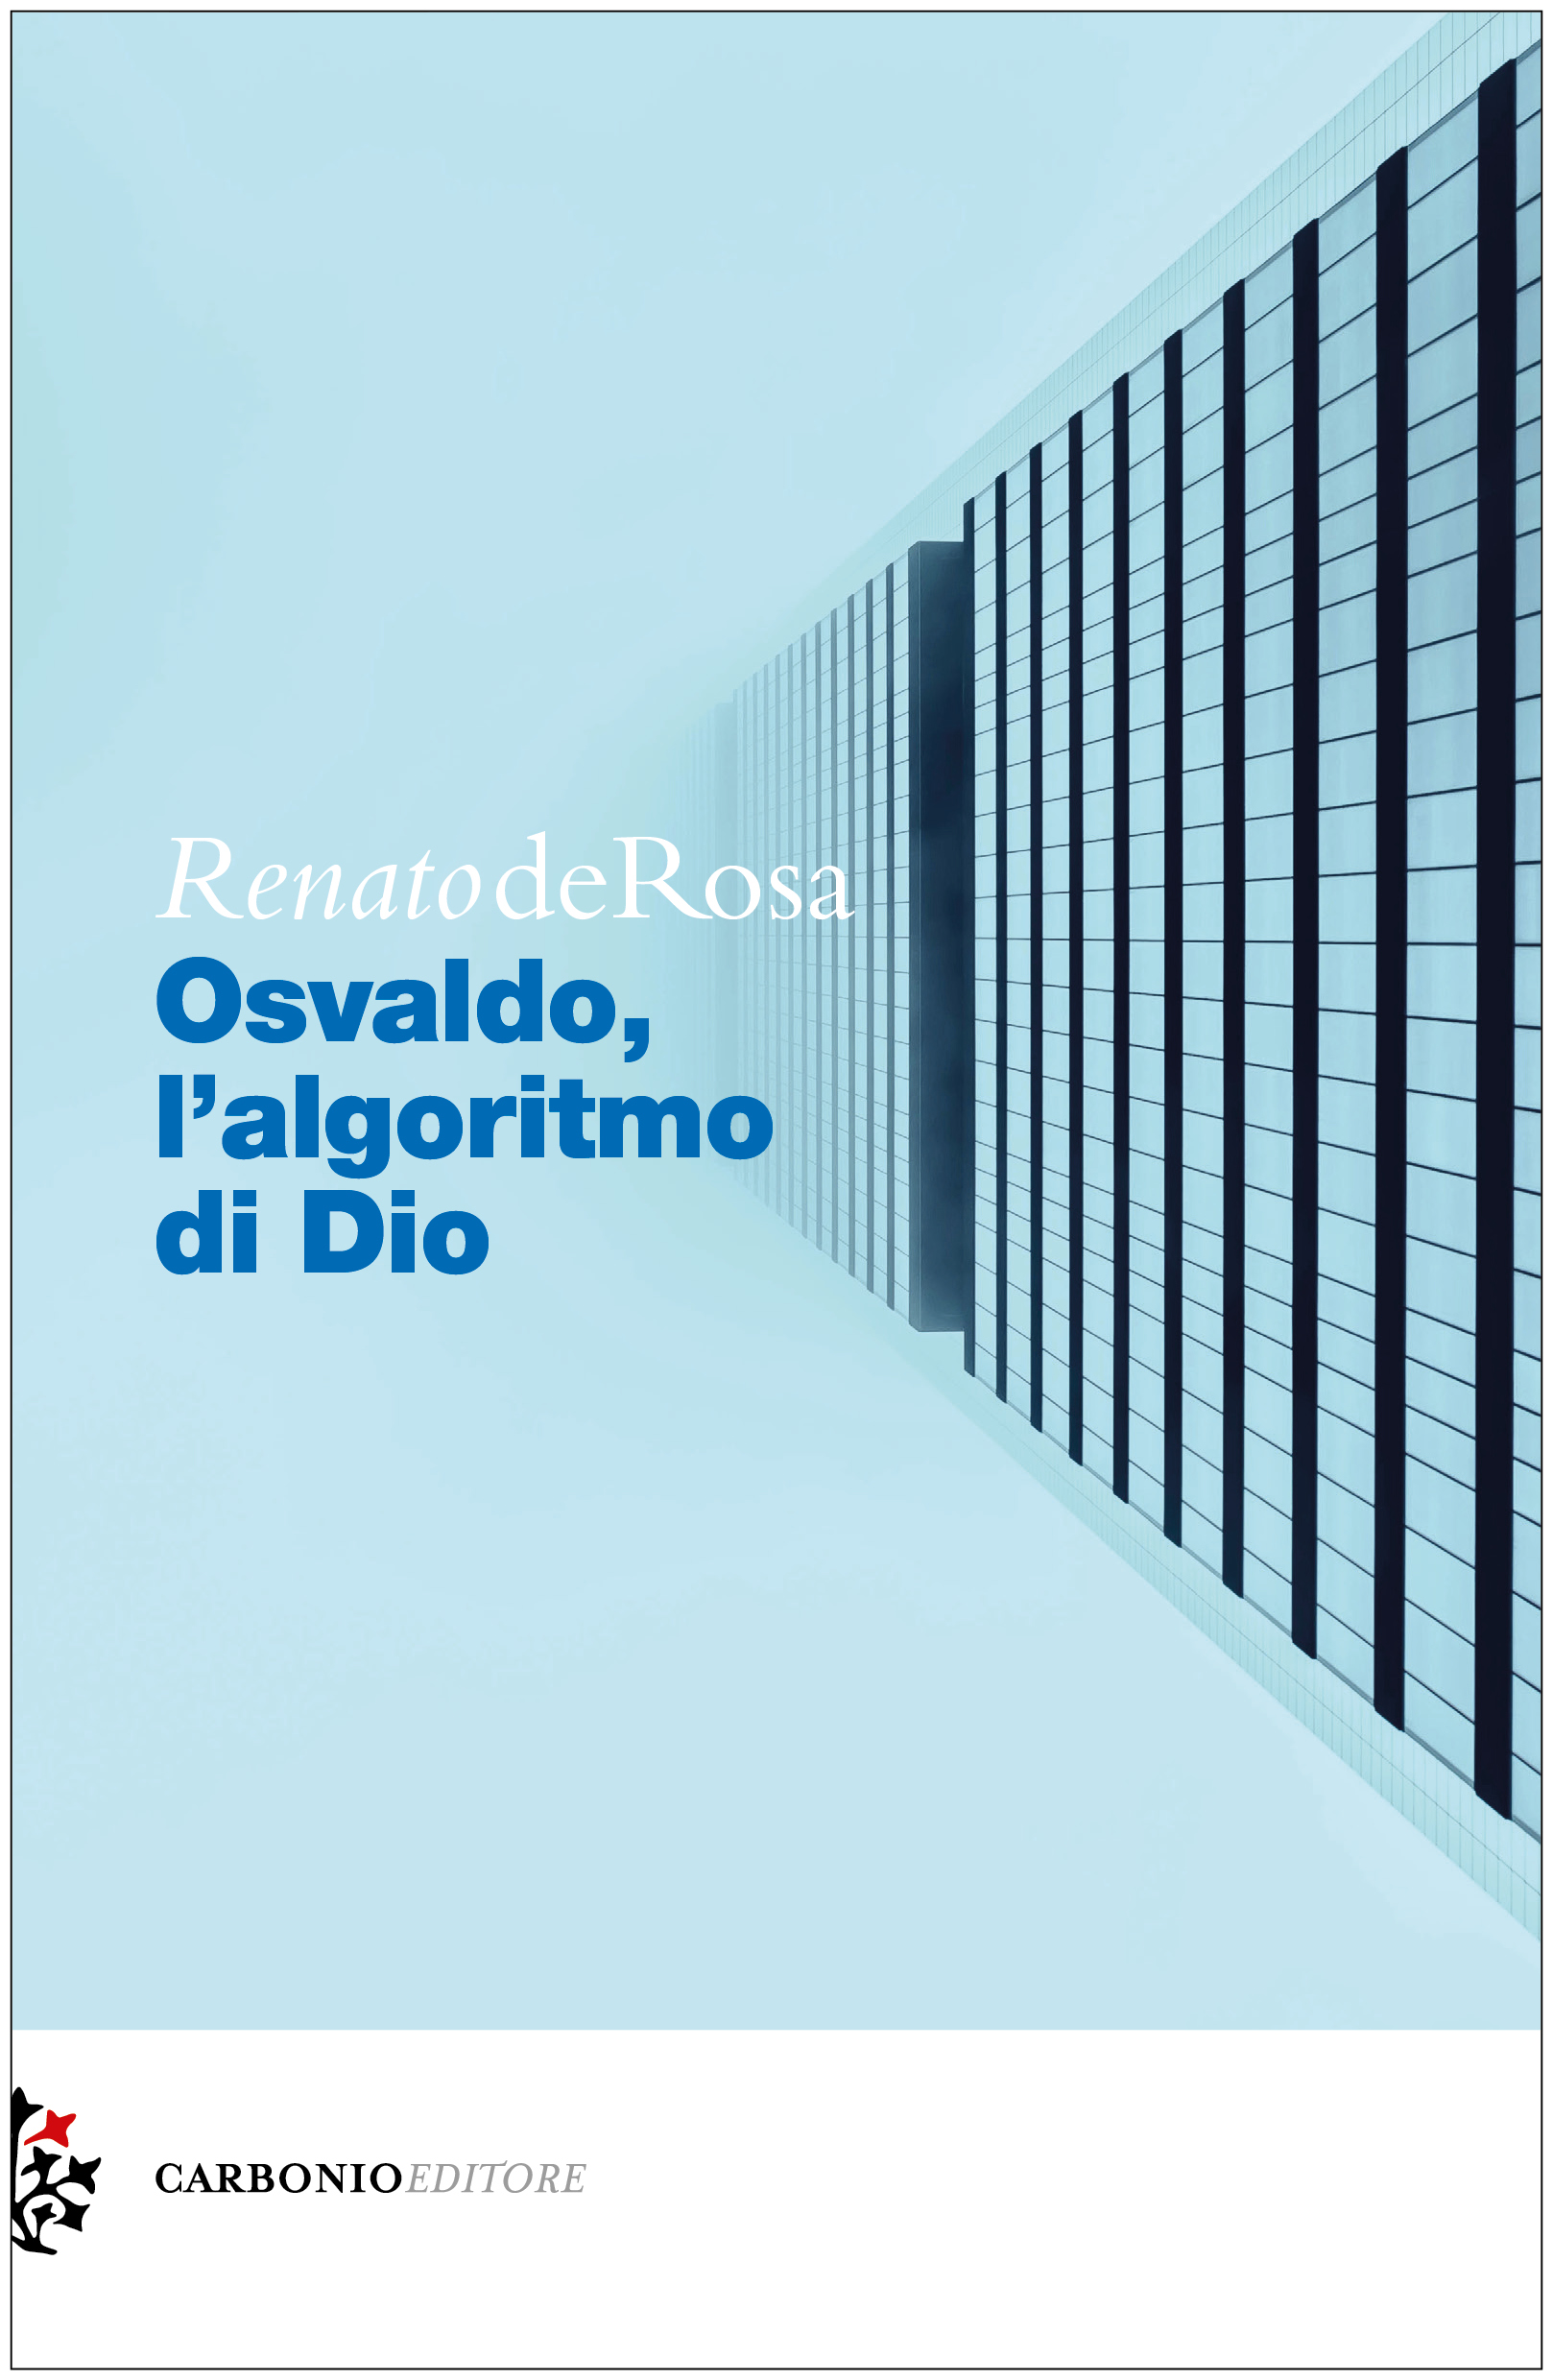 Recensione: Osvaldo, l’algoritmo di Dio di Renato de Rosa.